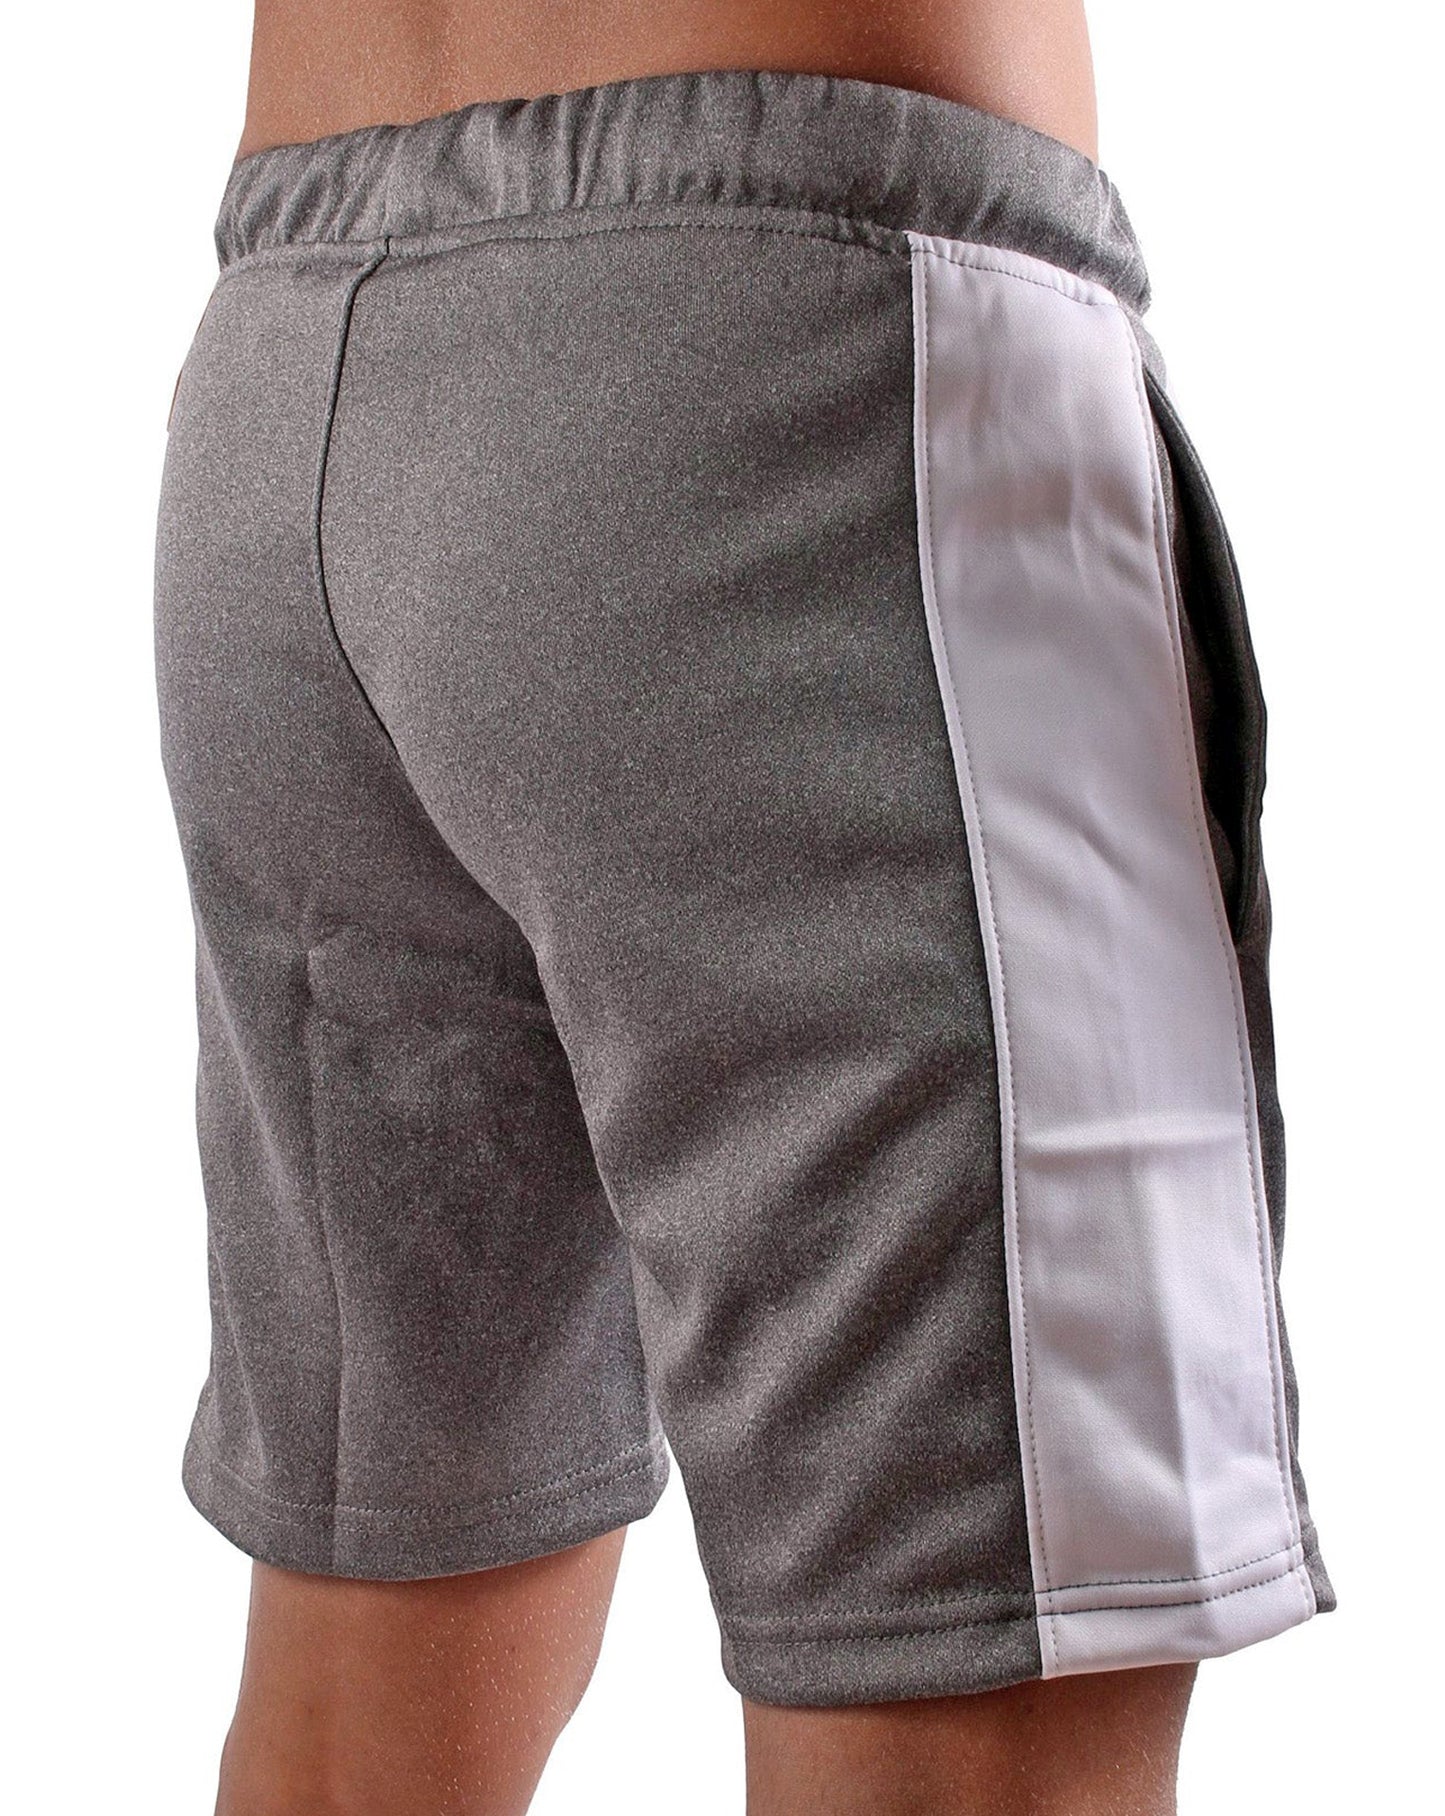 Gym Generation Sport Shorts mit elastischem Bund und Kordelzug für individuellen Halt und Komfort.